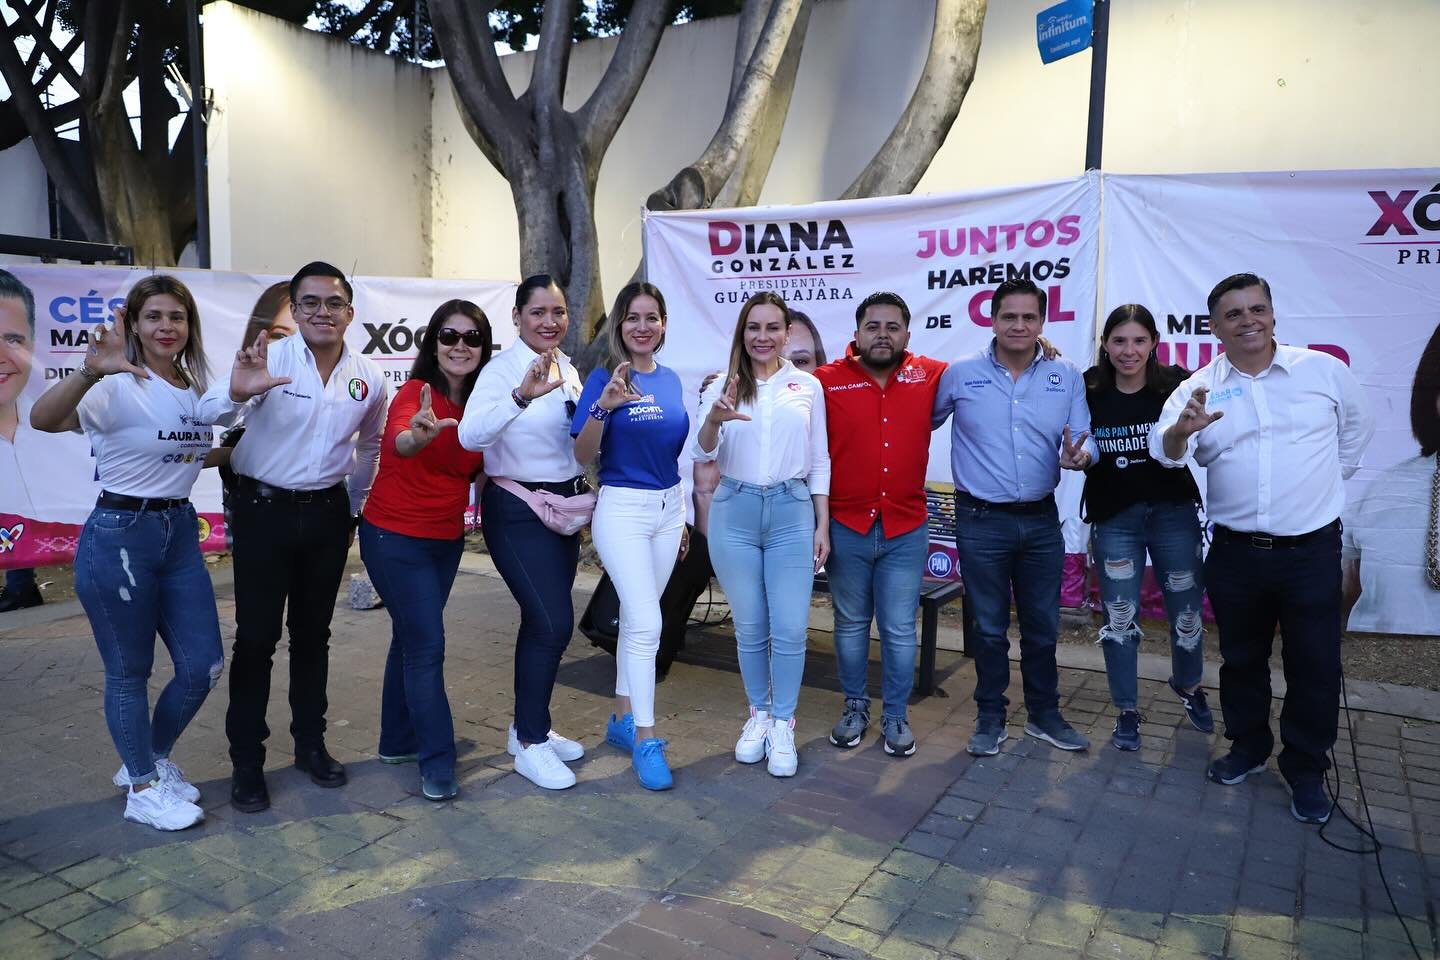 Diana González garantiza su compromiso con la niñez